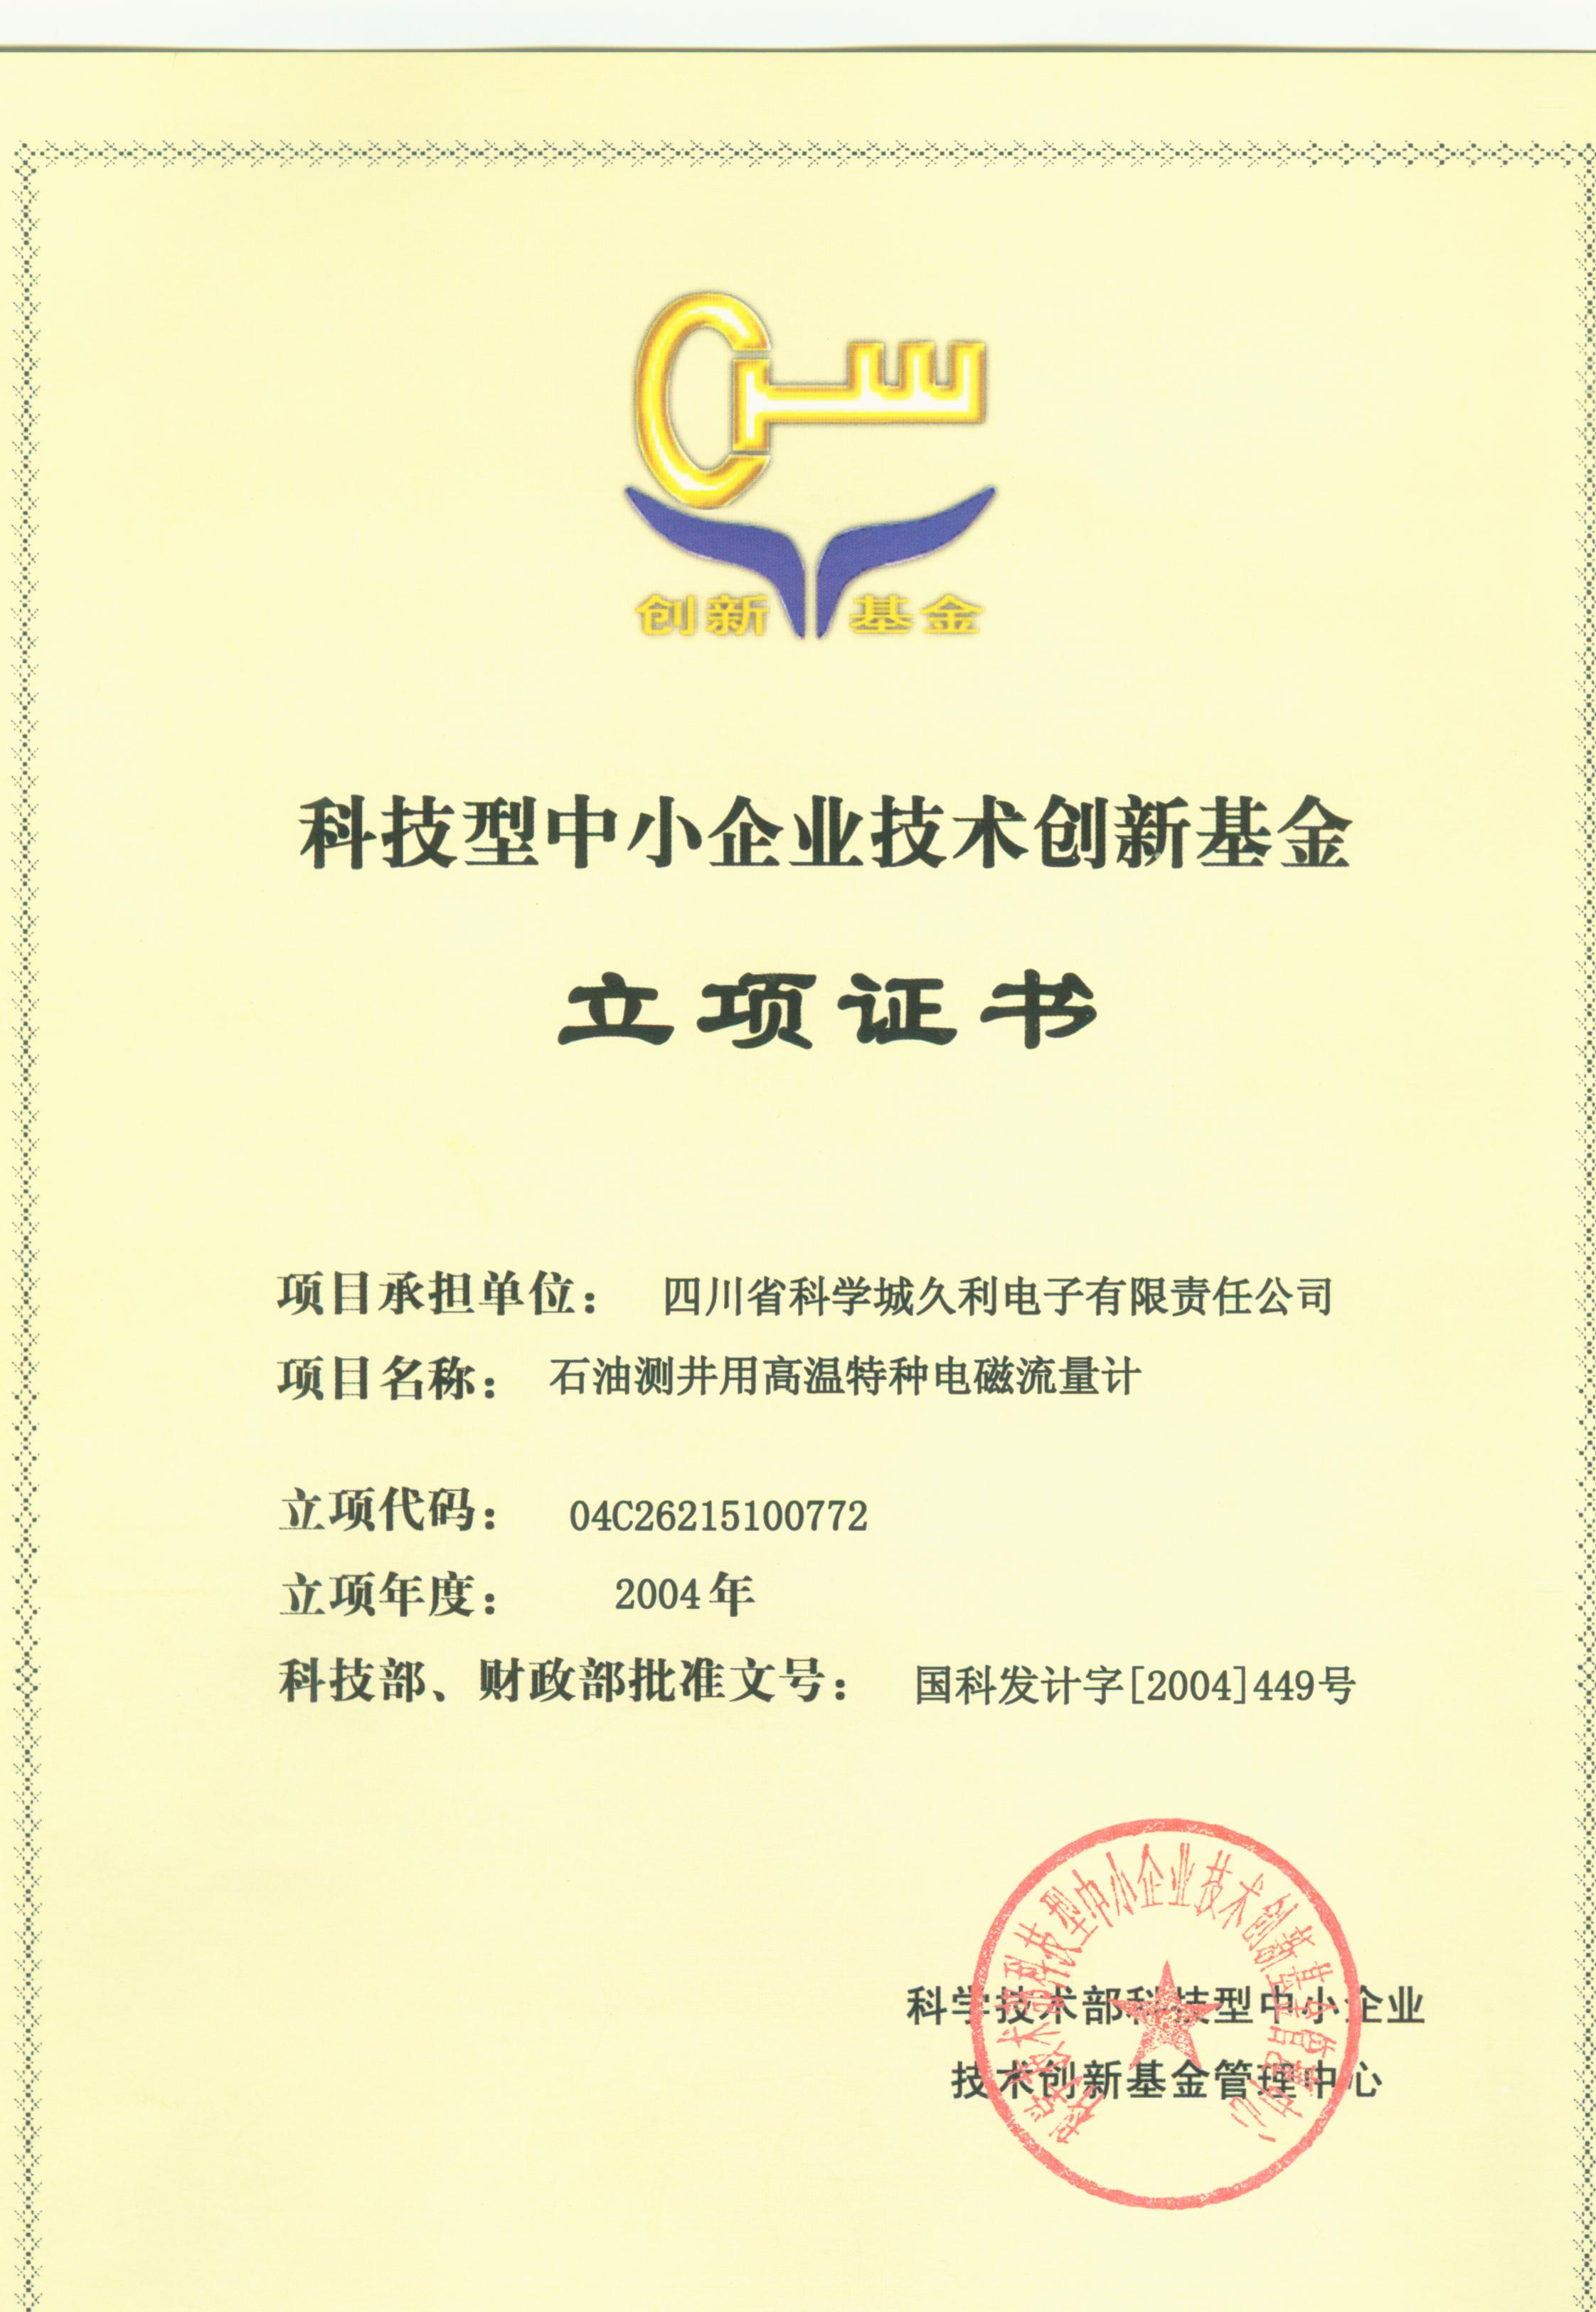 2004-科技型中小企业技术创新基金-石油测井用高温特种电磁流量计-立项证书